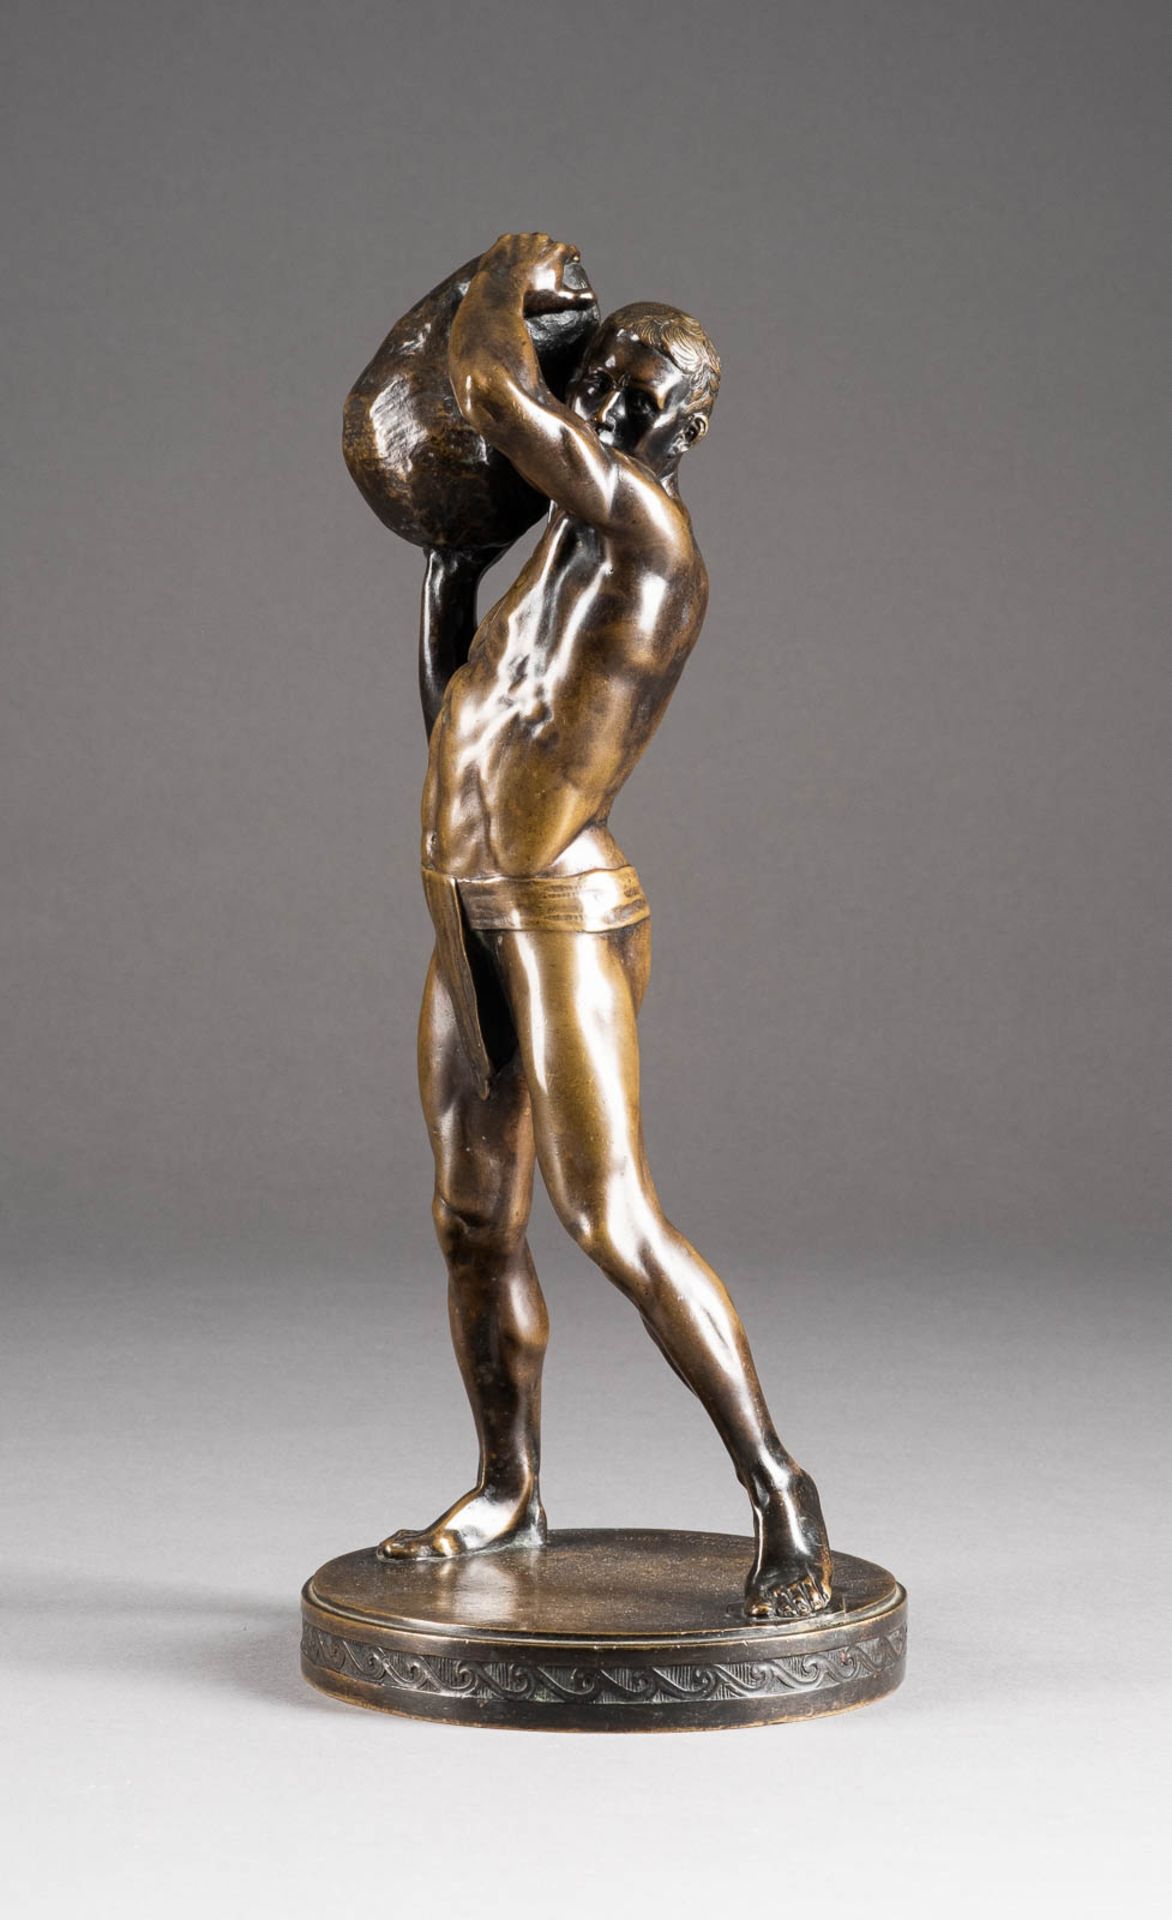 PAUL LEIBKÜCHLER1873 Berlin - 1938 ebendaSteinwerfer Bronze, braun patiniert. H. 33 cm. Auf der